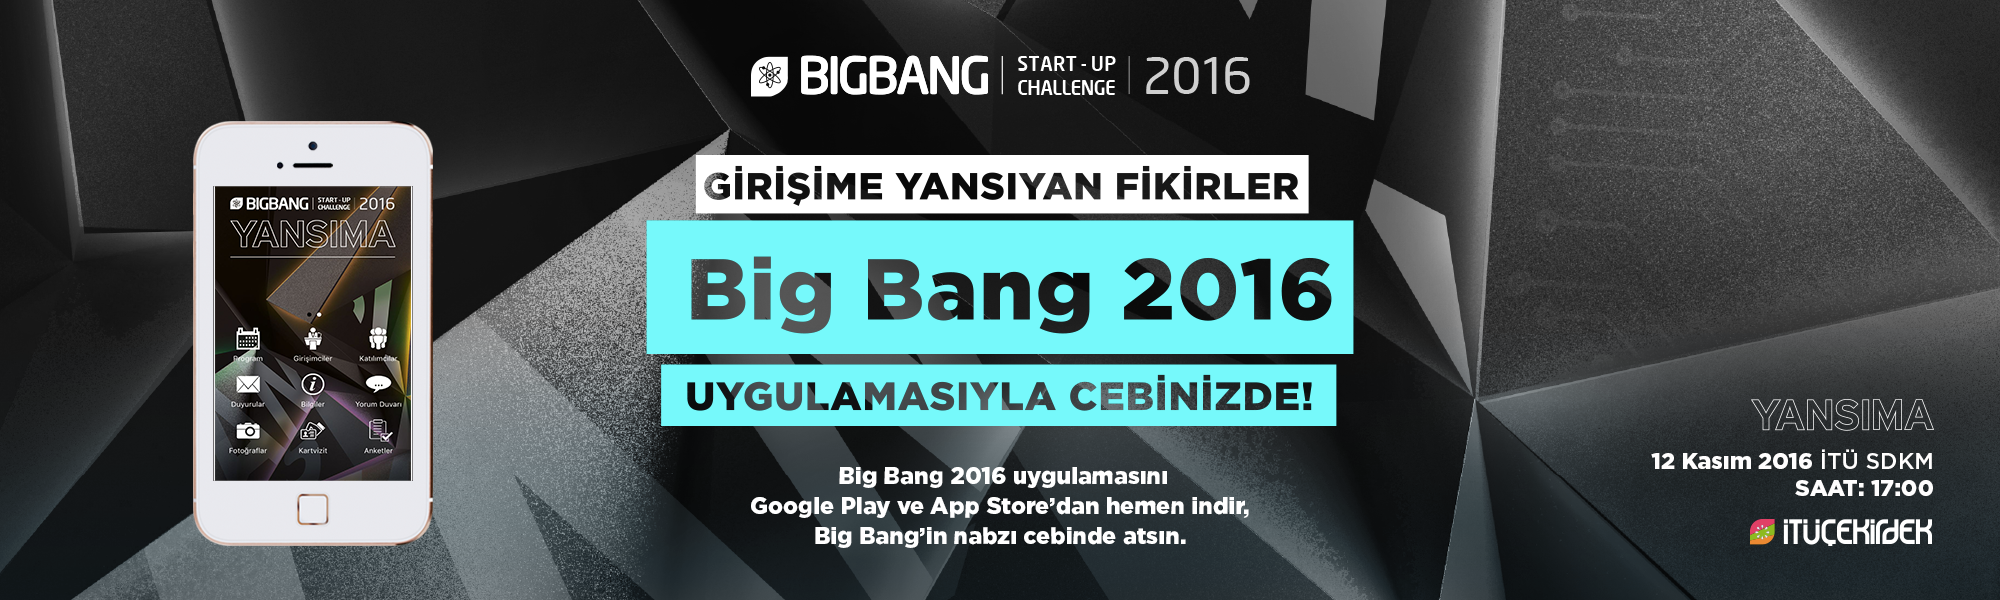 big bang 2016 mobi̇l uygulamasi çikti! 8